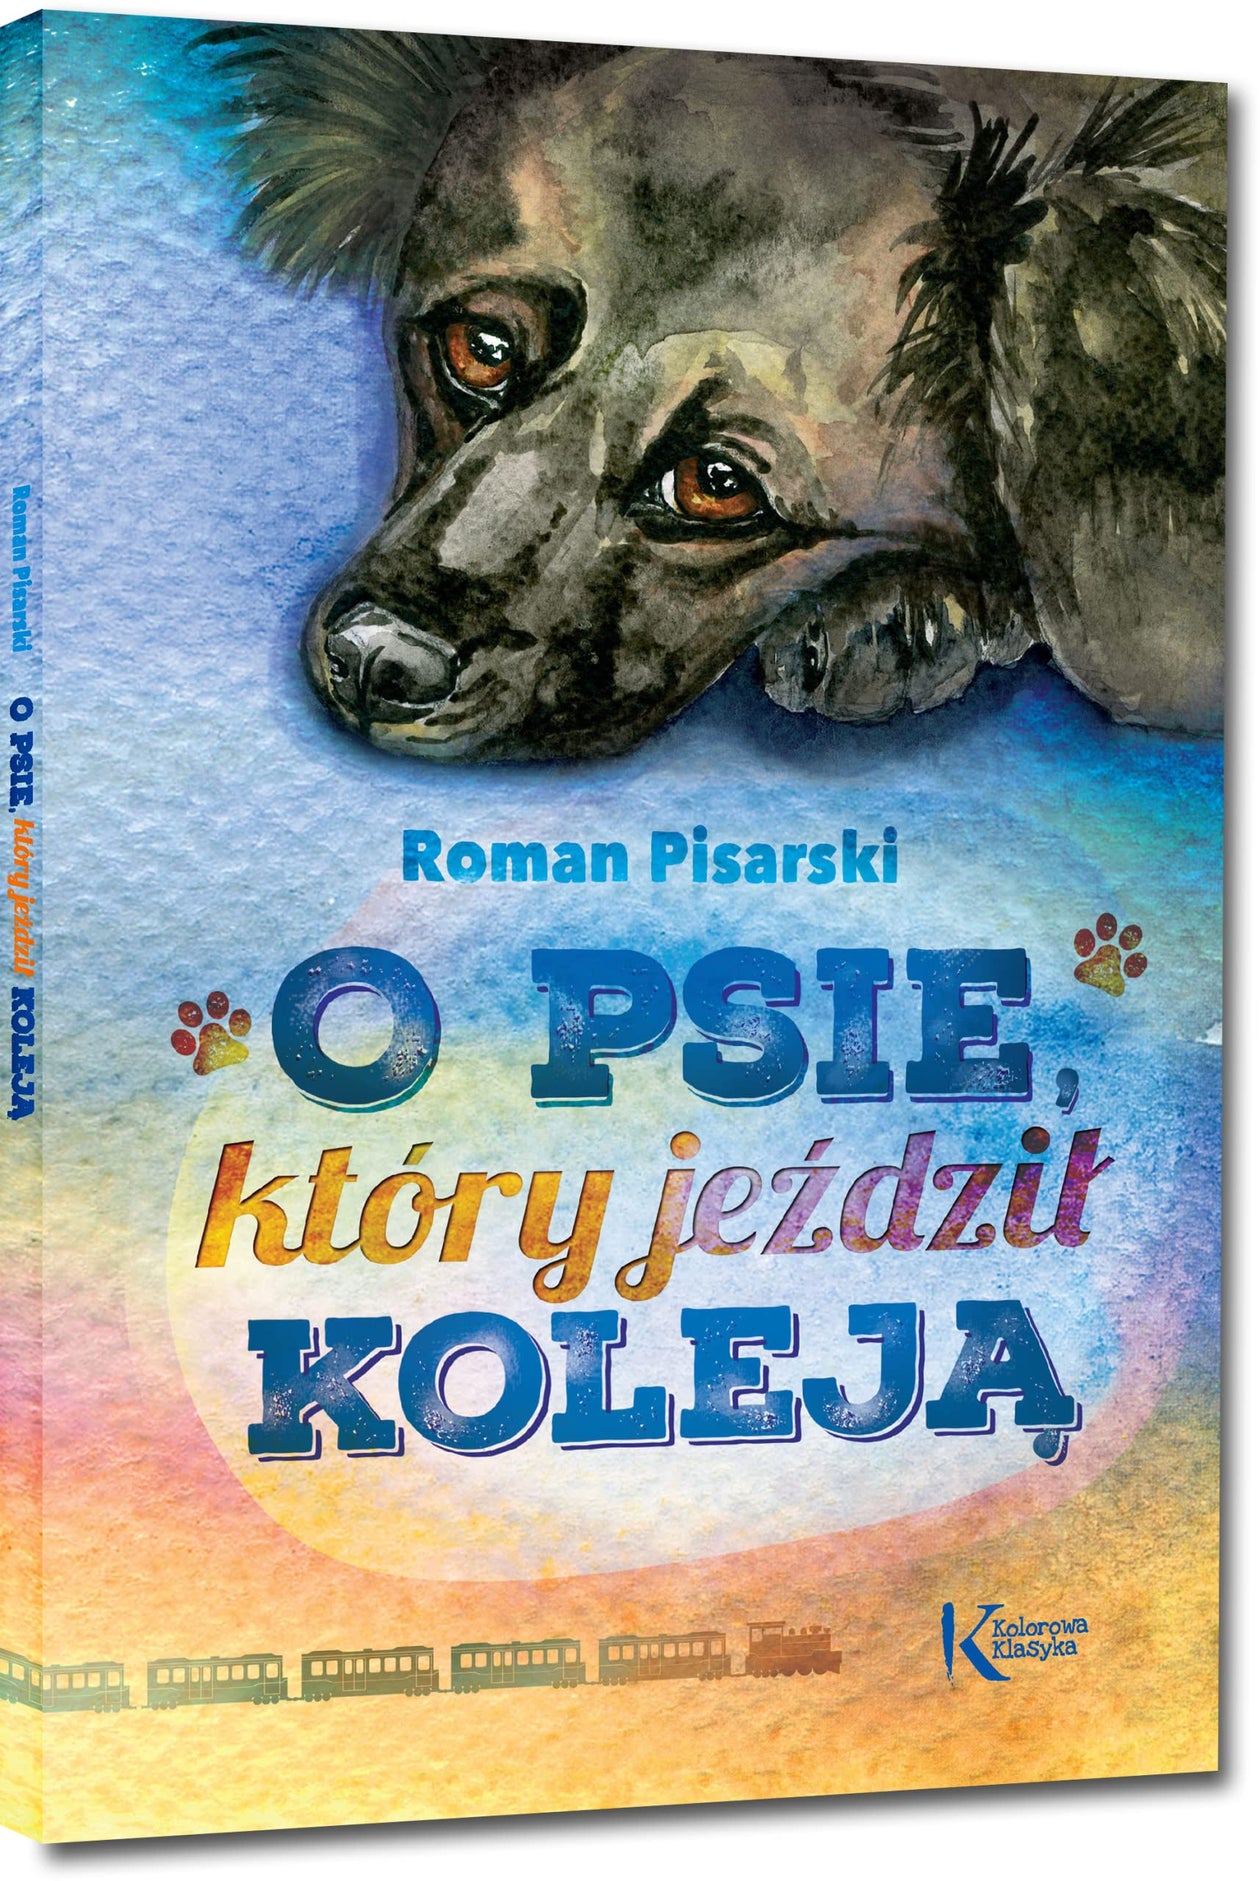 O psie, który jeździł koleją by Roman Pisarski, illustrated by Katarzyna Bilska